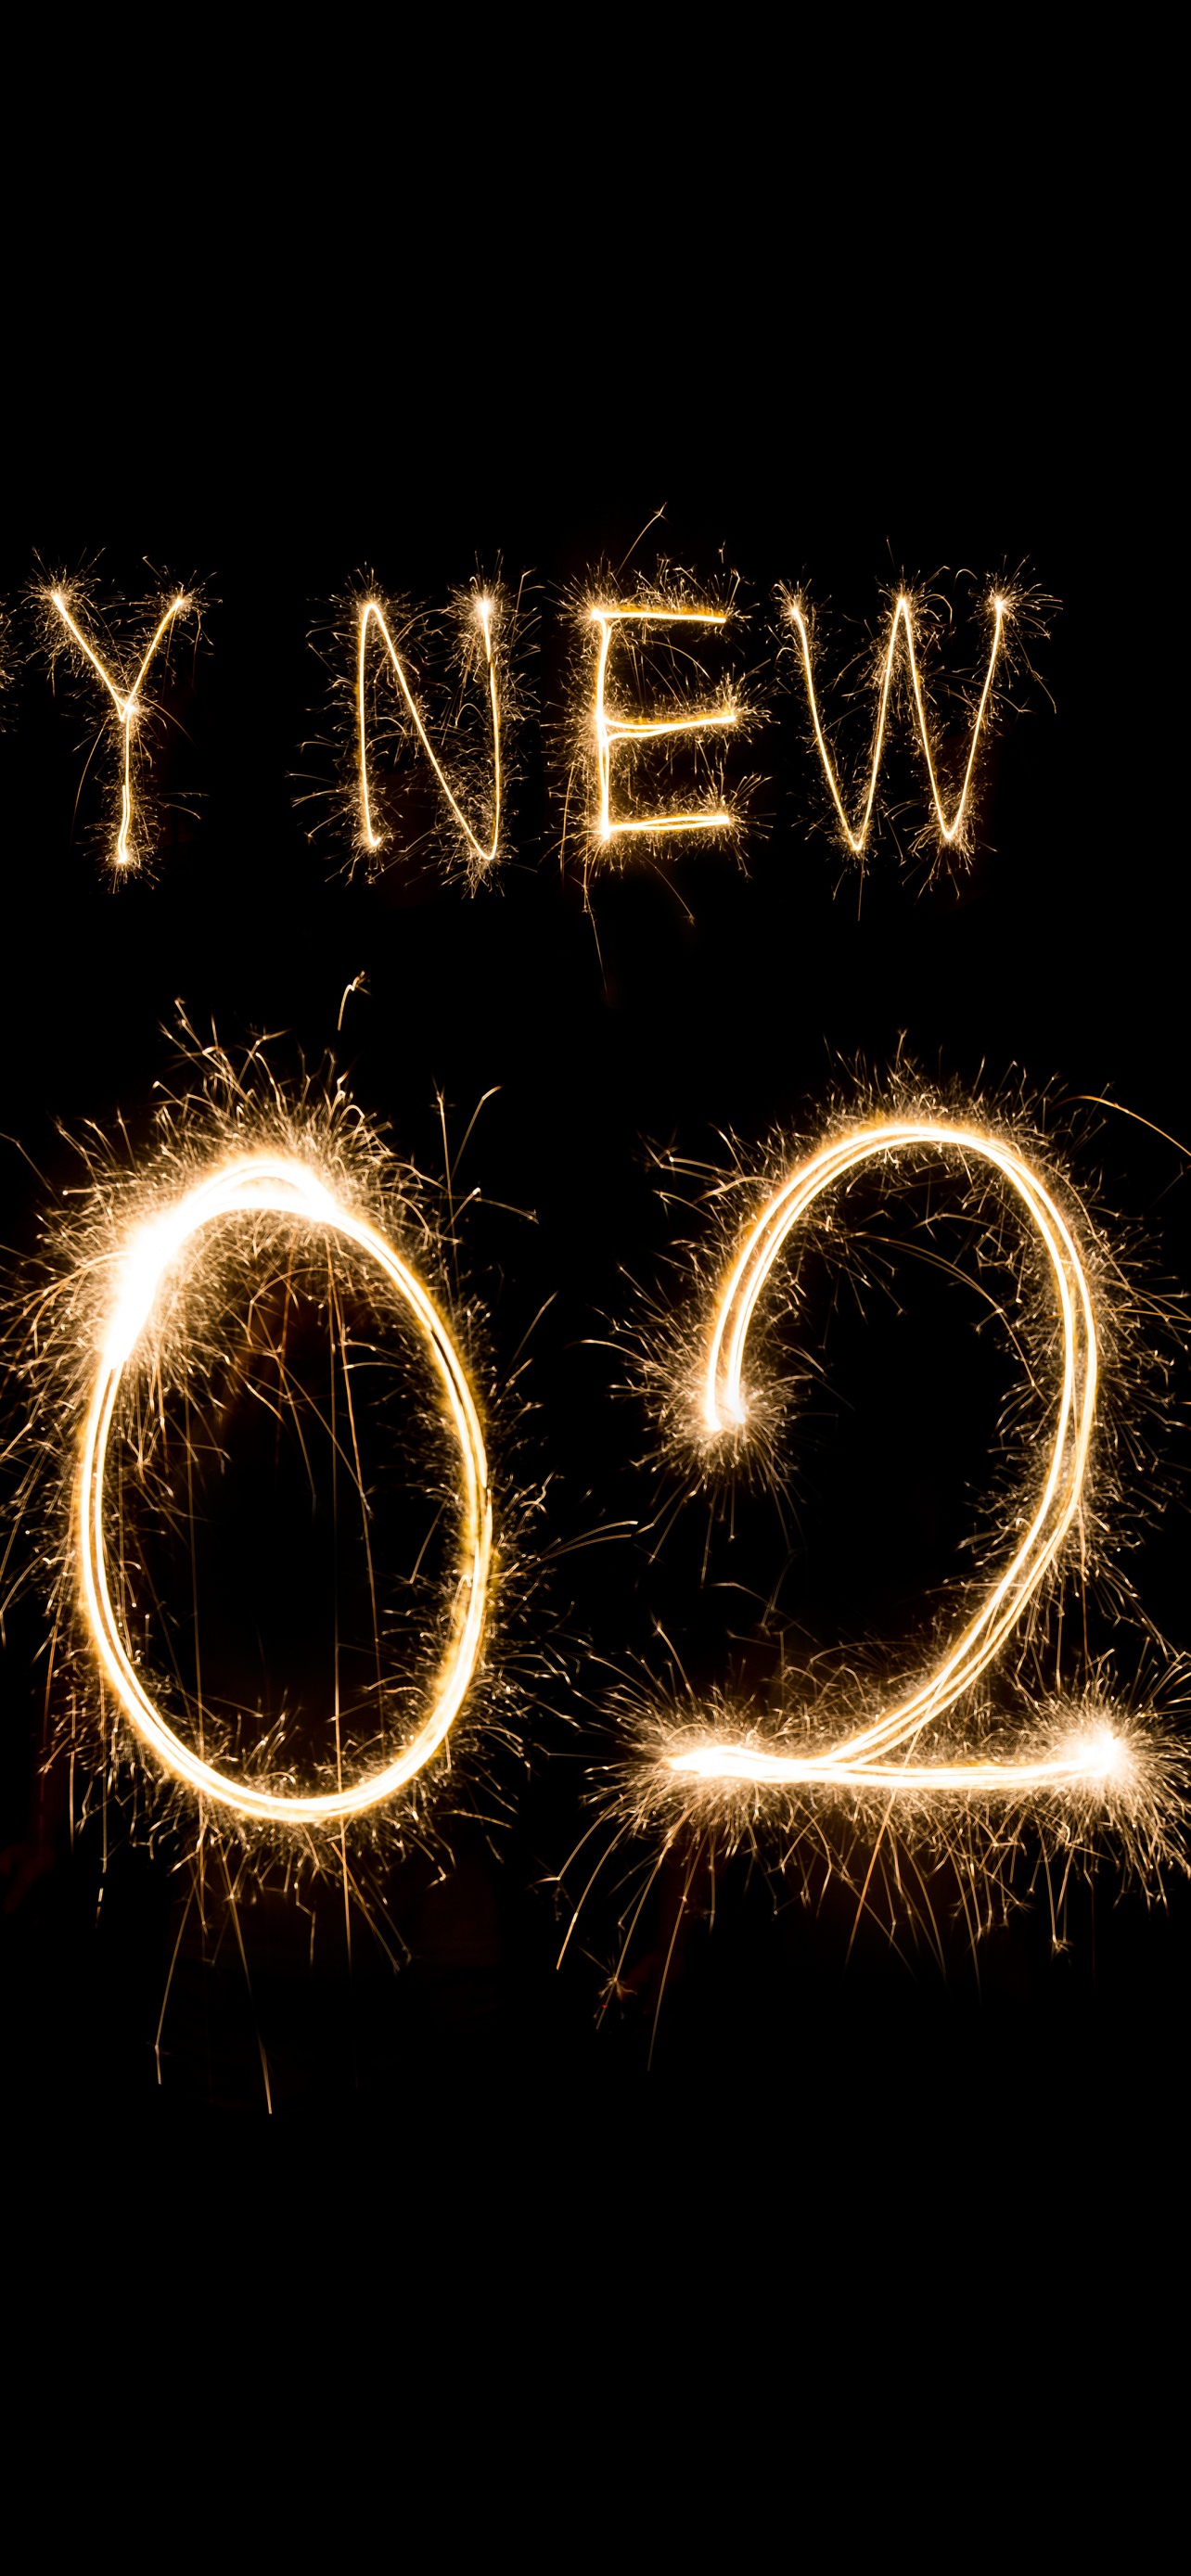 Sẵn sàng cho một năm mới đầy hứa hẹn? Hãy bắt đầu với một hình nền Năm mới 2024 đẹp, khiến màn hình của bạn trở nên tươi sáng và đầy niềm vui. Một trong những hình nền Năm mới đẹp chắc chắn sẽ làm cho bạn và những người xung quanh cảm thấy háo hức và sẵn sàng cho một năm mới thật tuyệt vời!